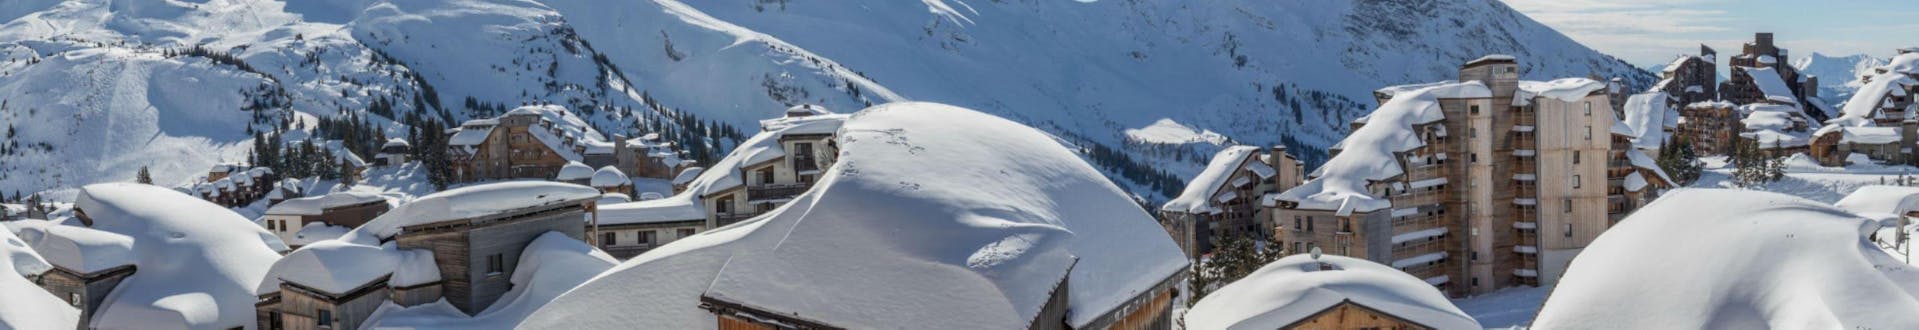 Ein Panoramablick über die schneebedeckten Berghütten und Hotels im französischen Skigebiet Avoriaz, wo örtliche Skischulen ihre Skikurse anbieten.